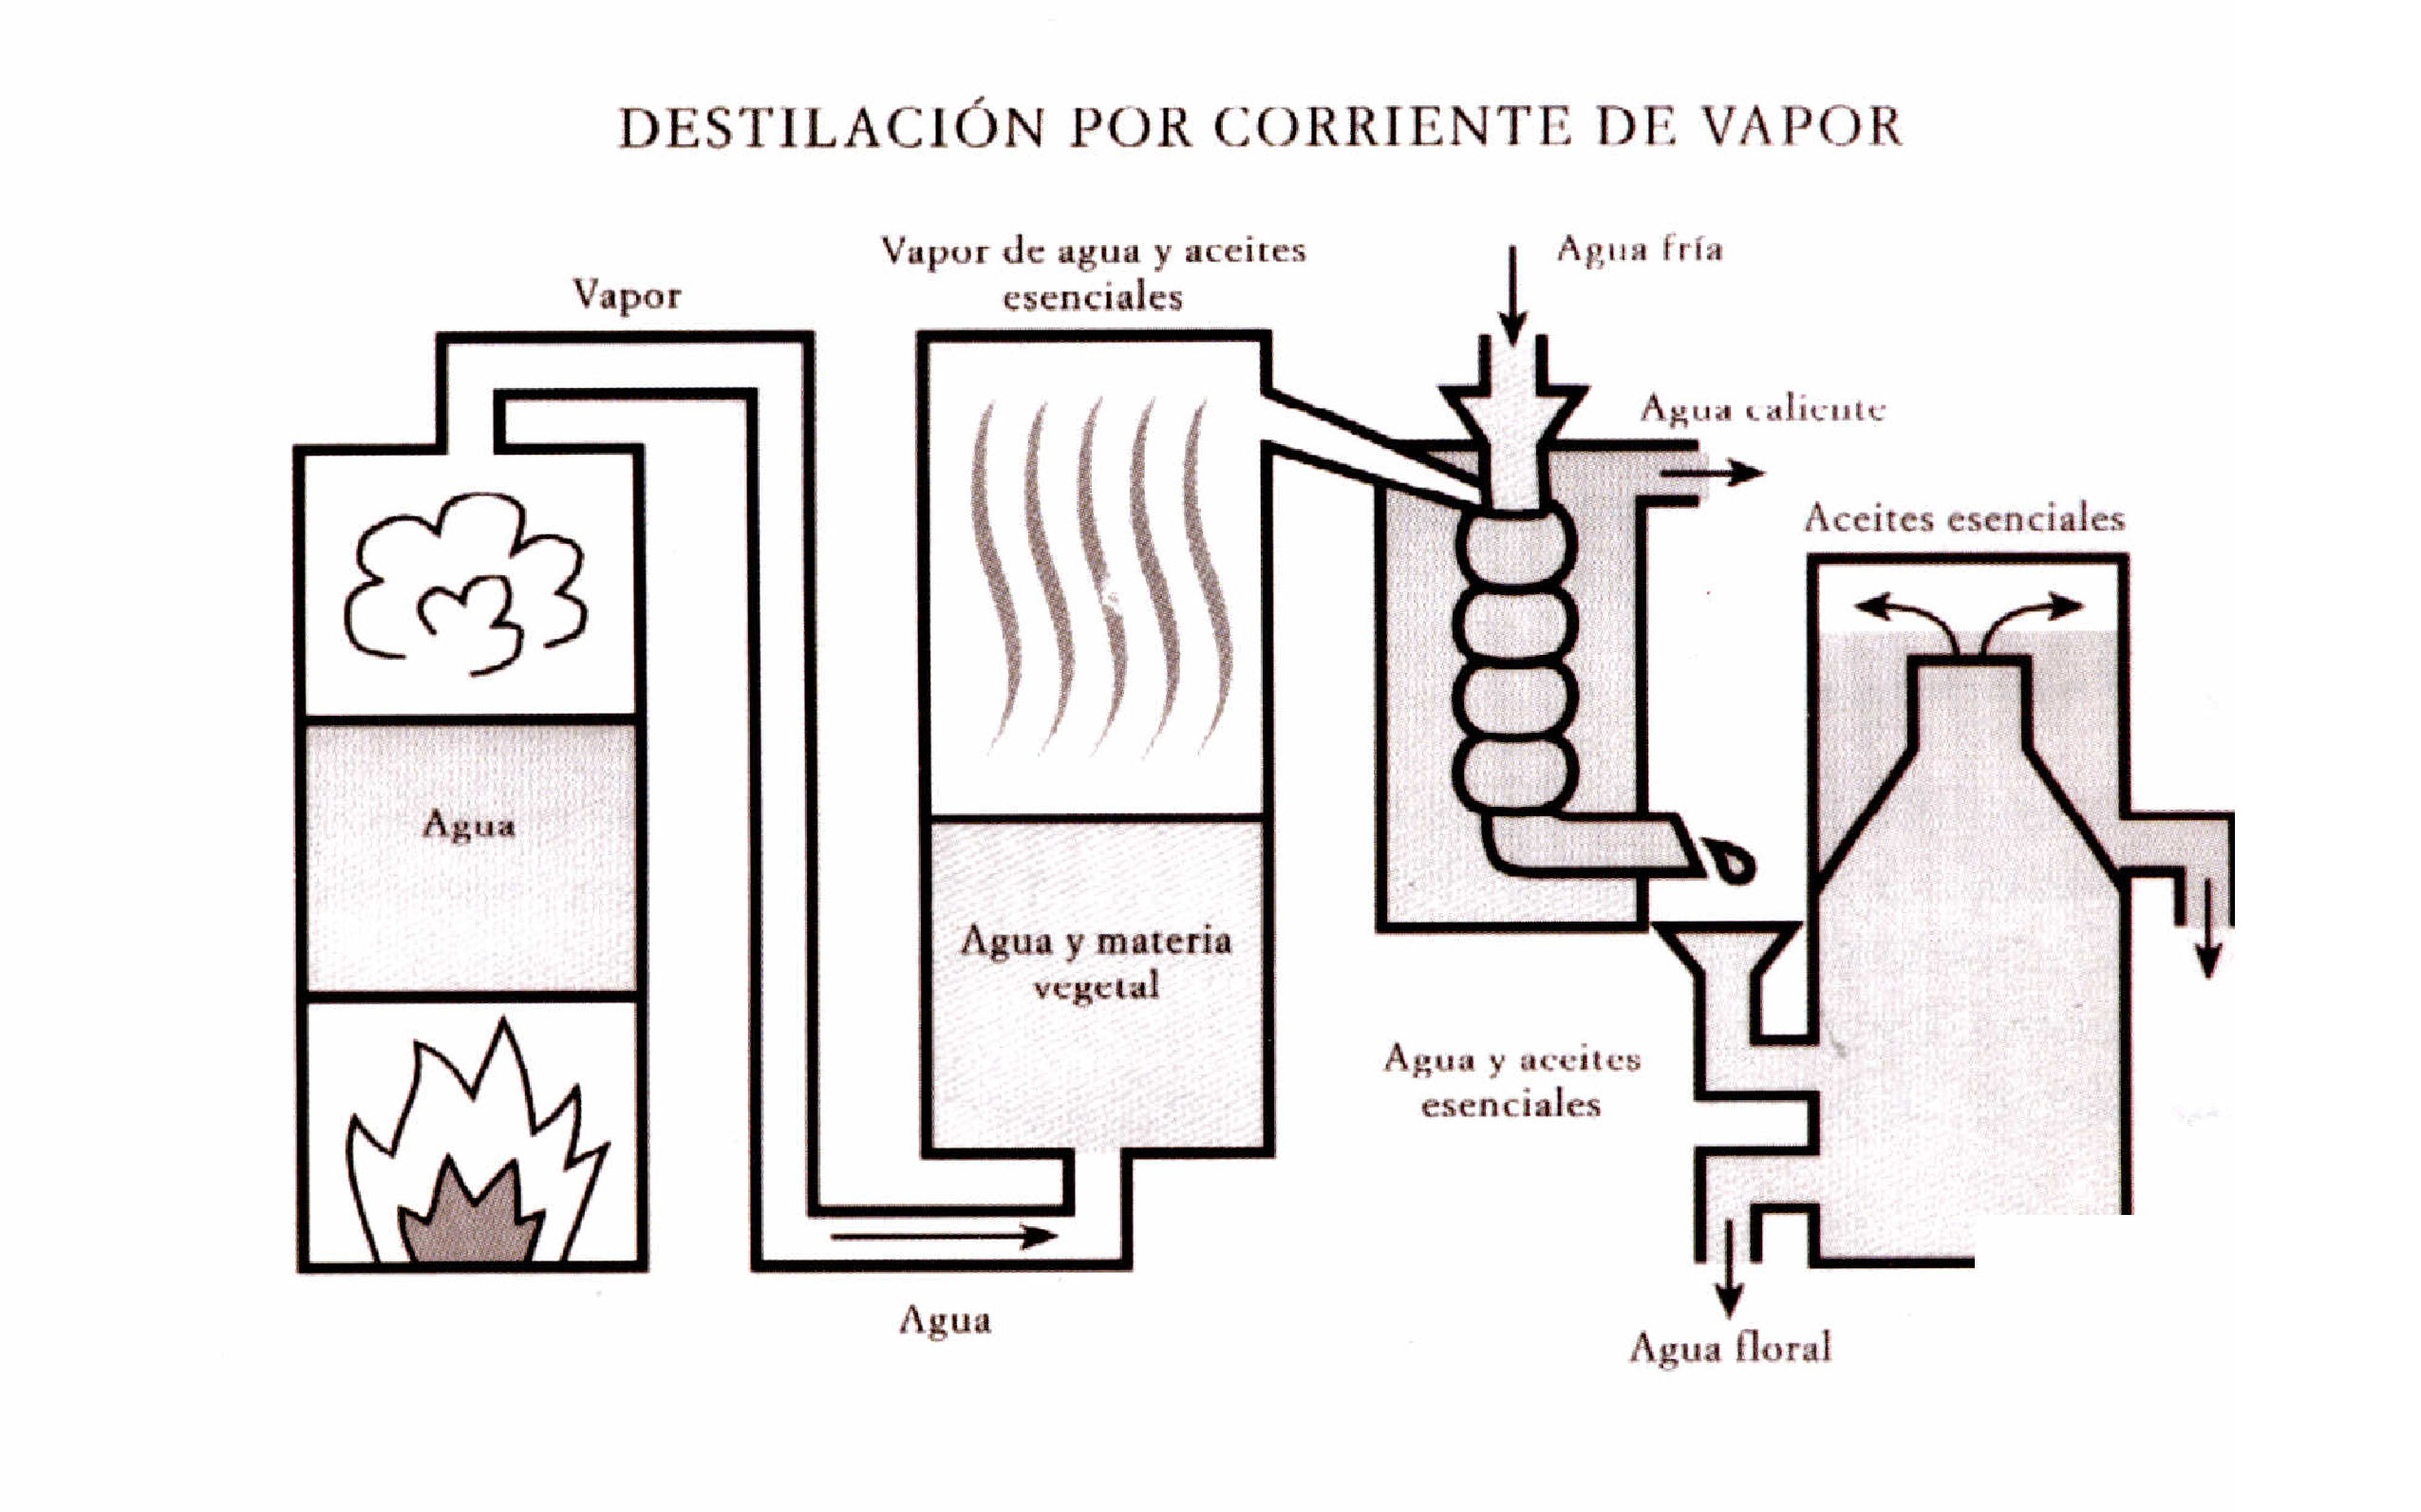 Proceso de destilación para obtener hidrolatos